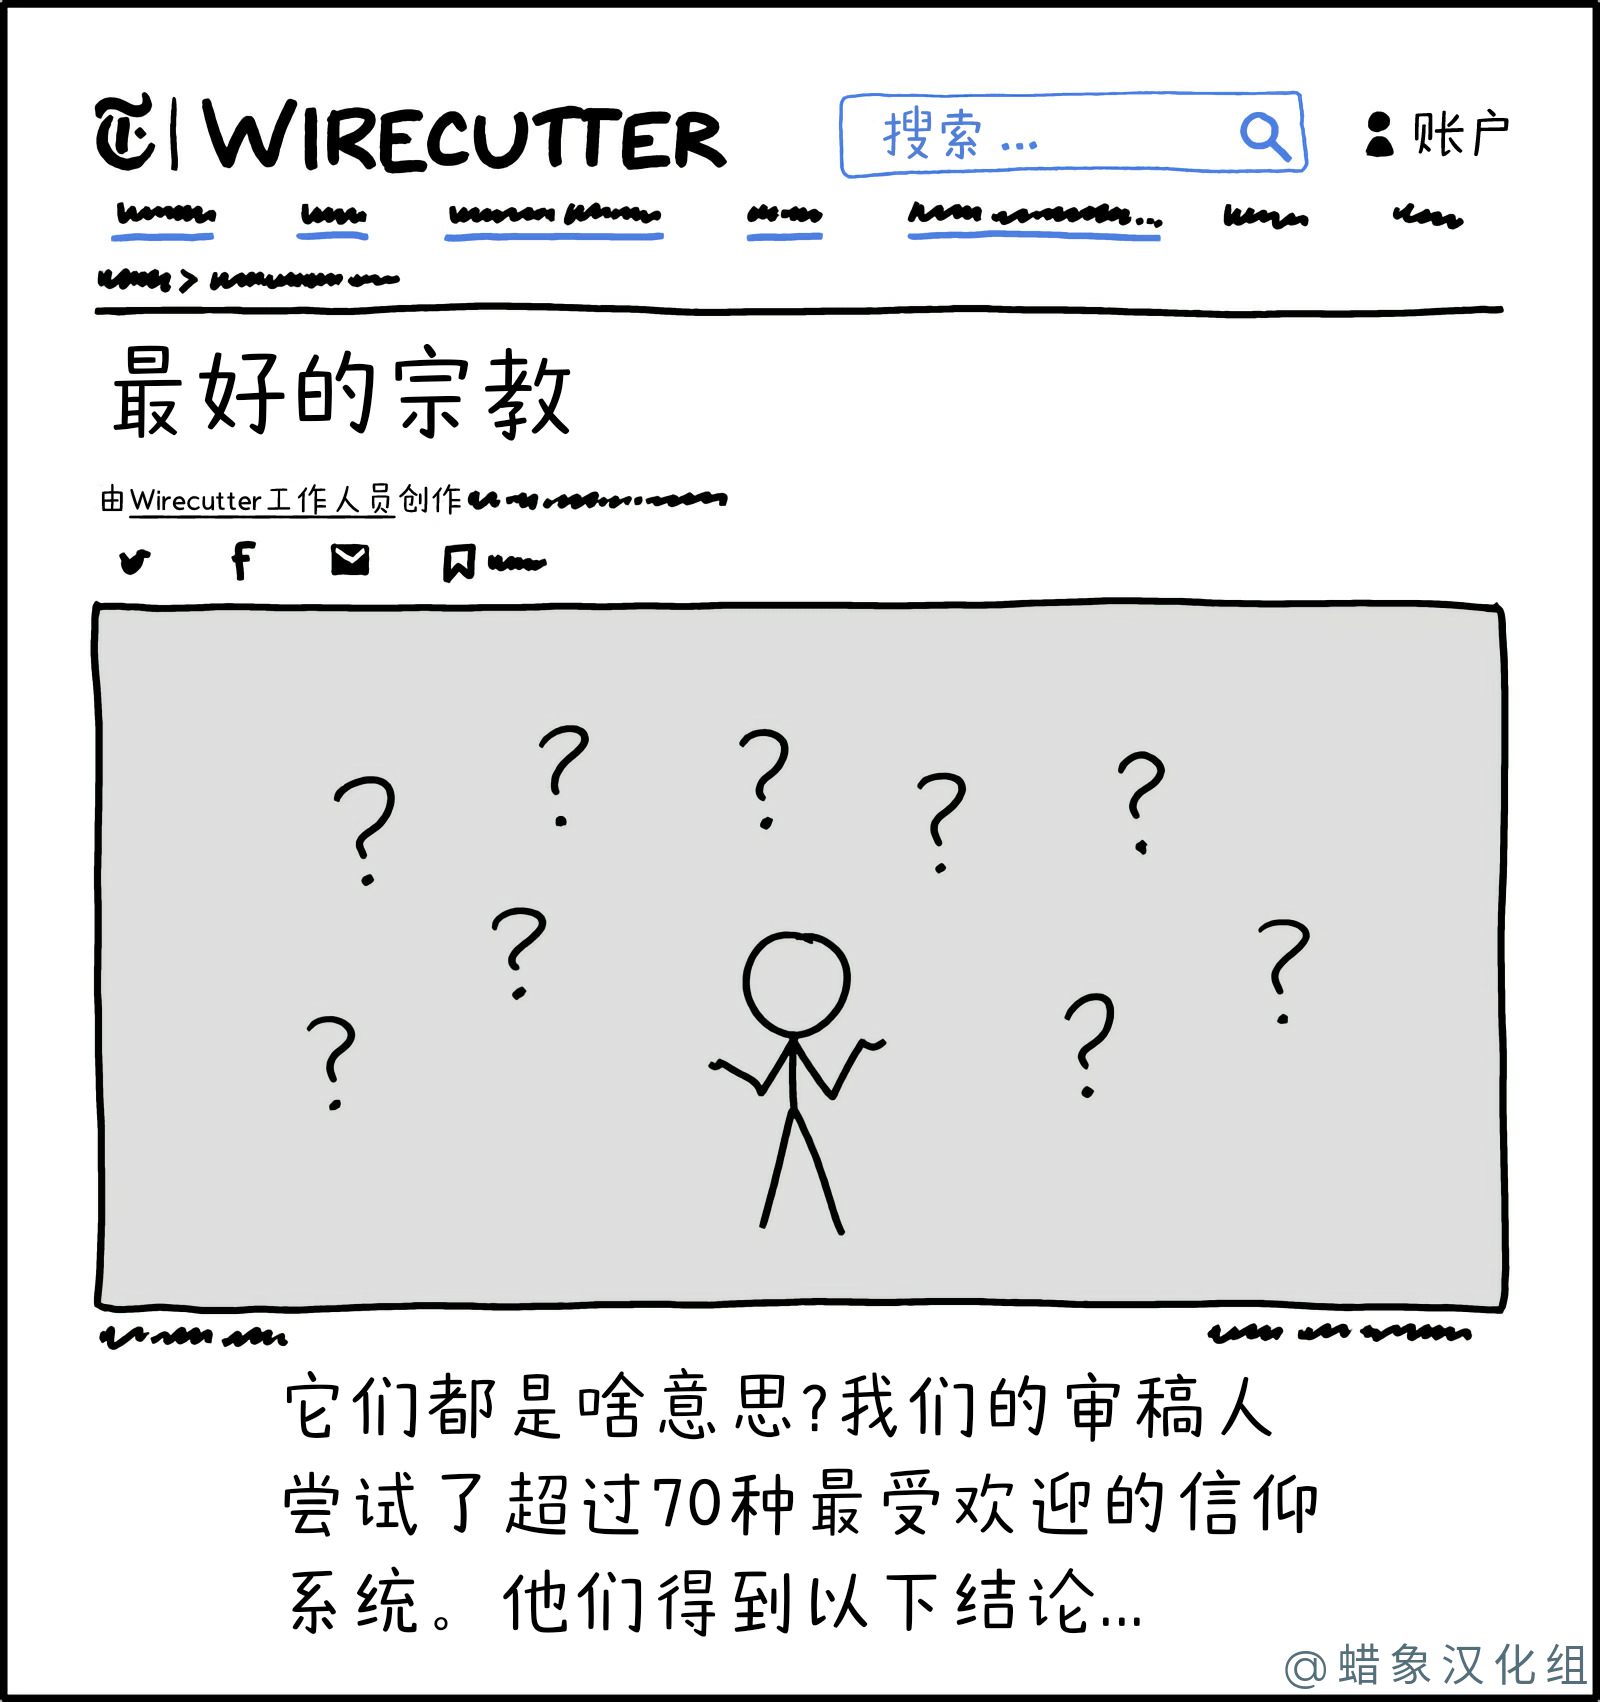 Wirecutter